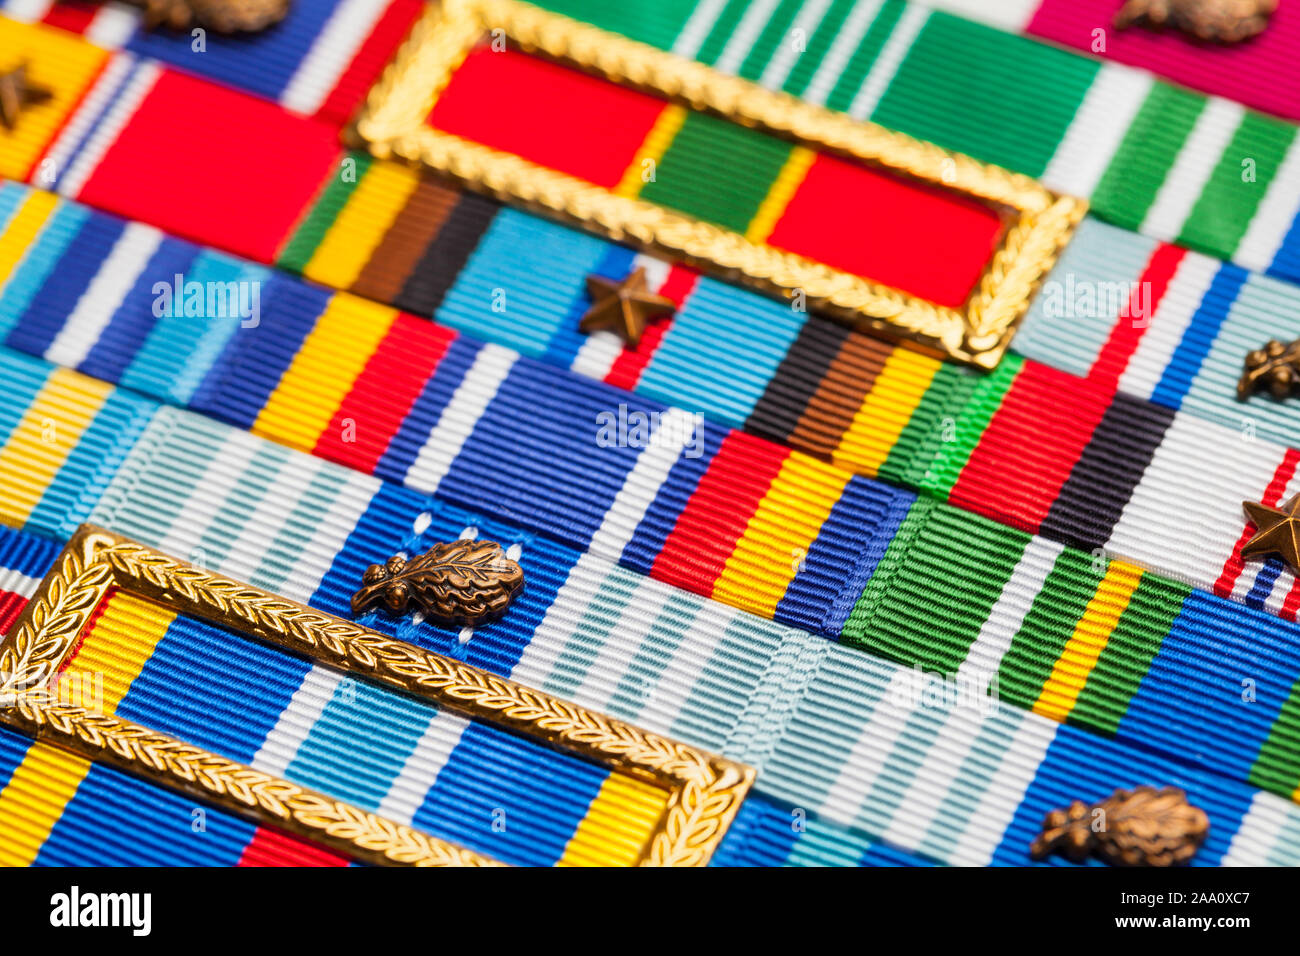 Several MIlitary Award Ribbons Close Up View. Stock Photo